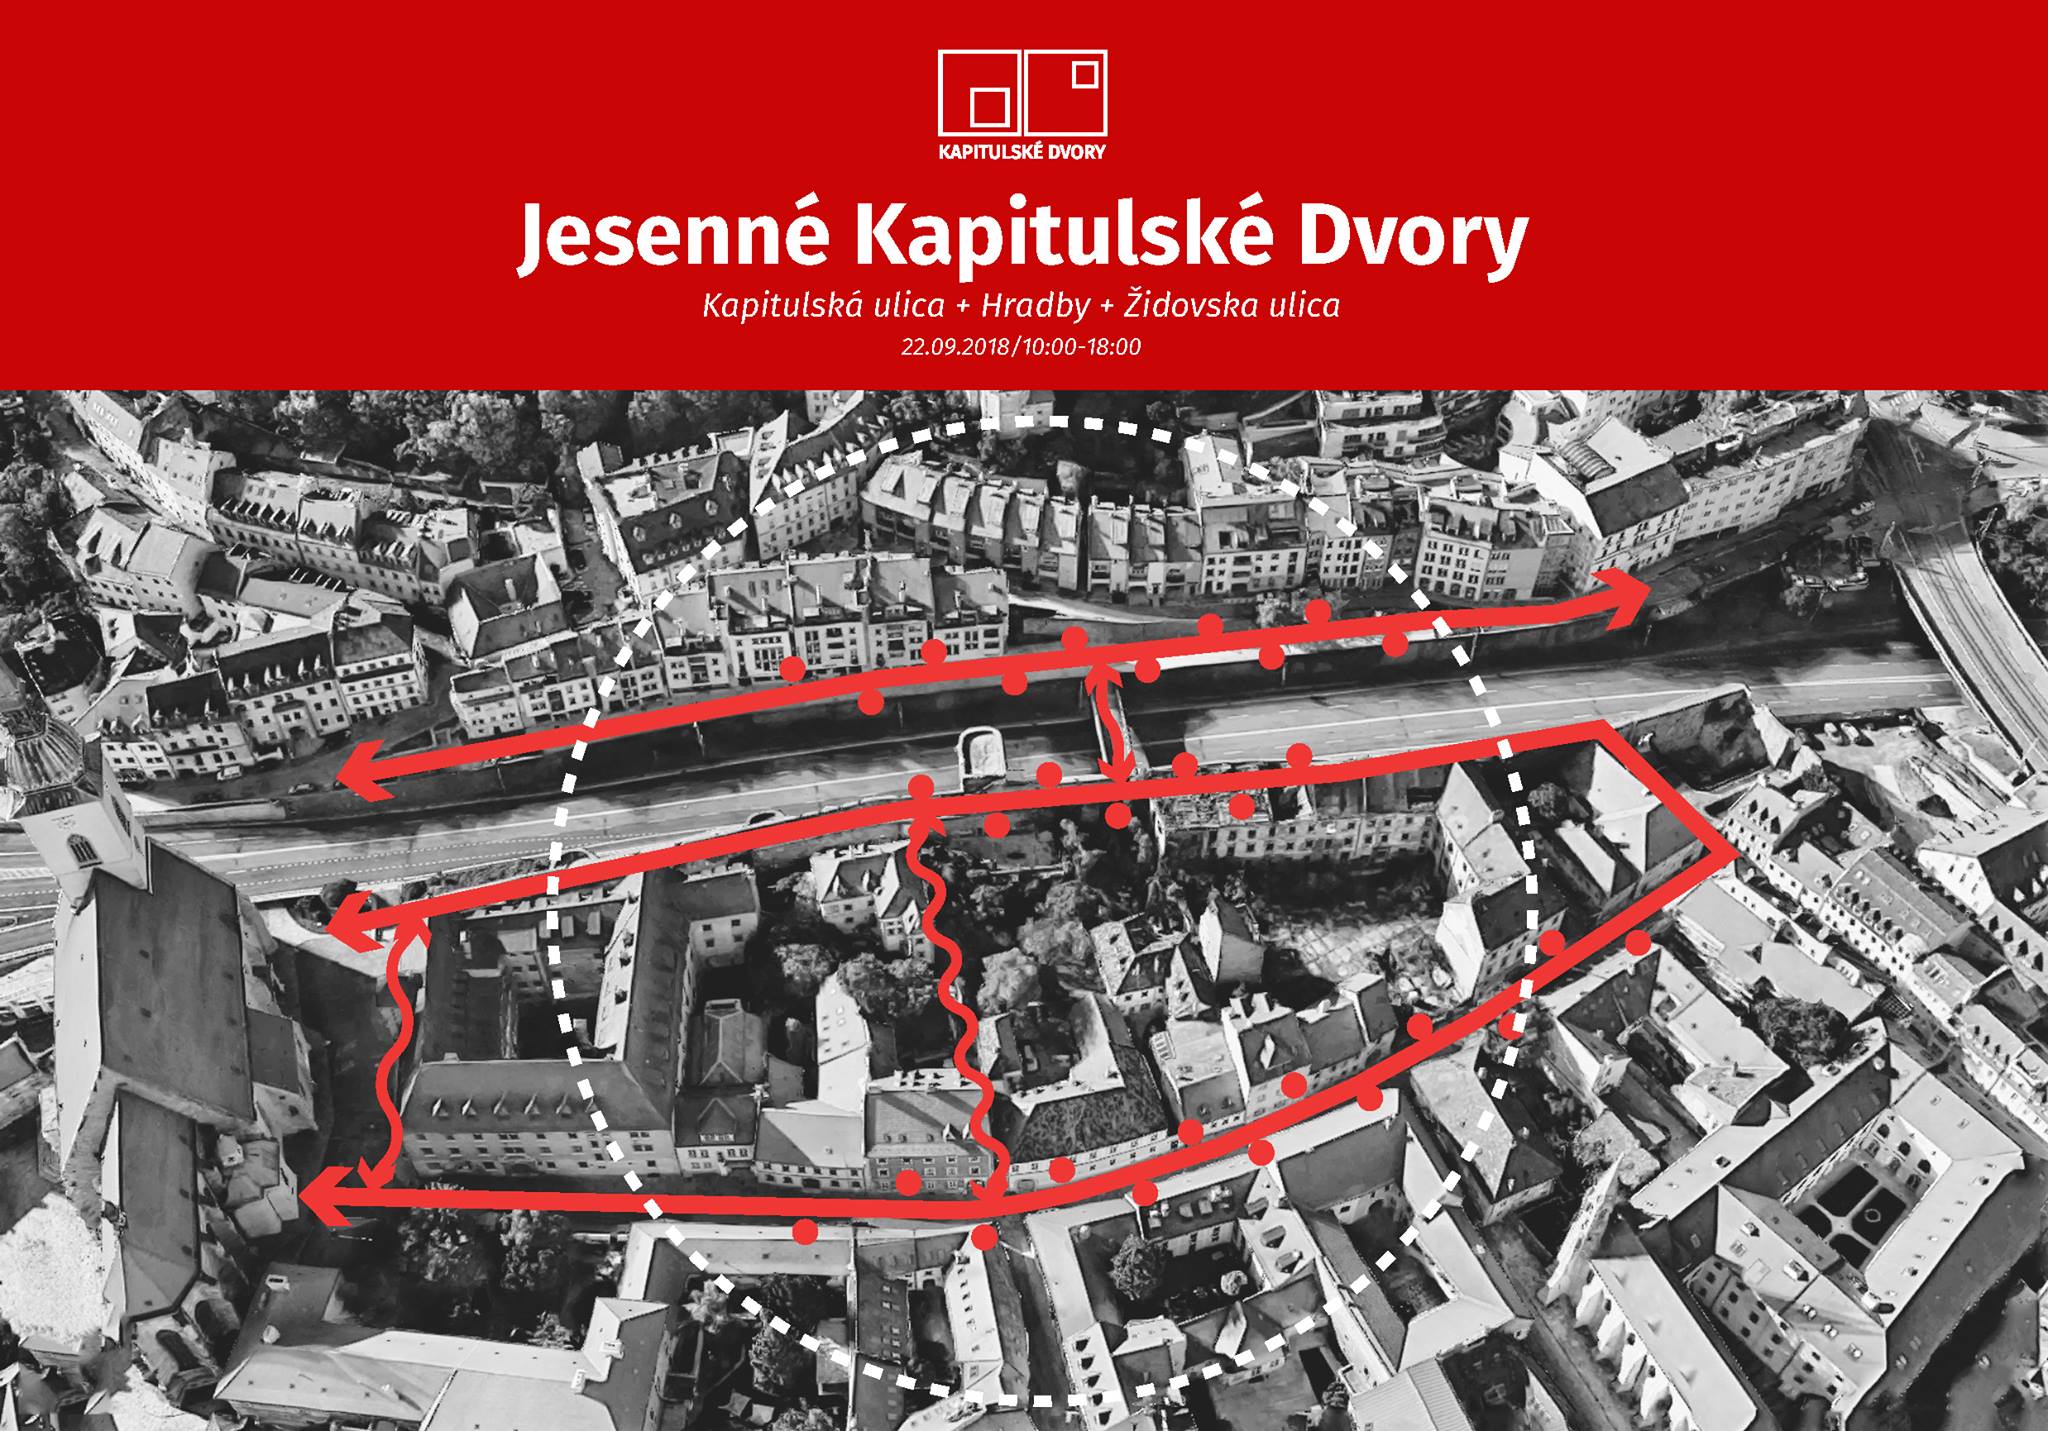 Jesenn Kapitulsk dvory 2018 Bratislava - 4. ronk